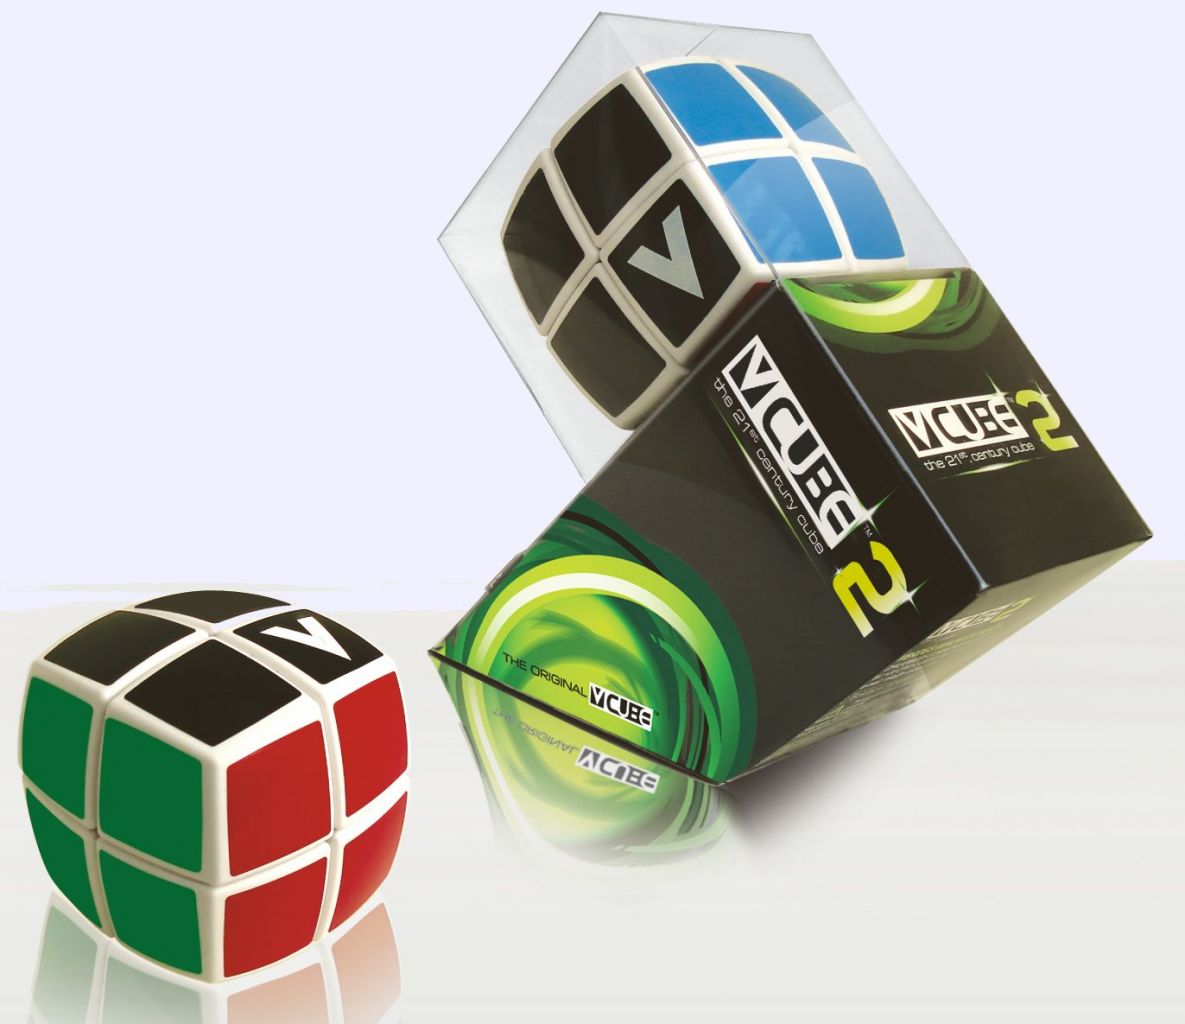 V-Cube 2